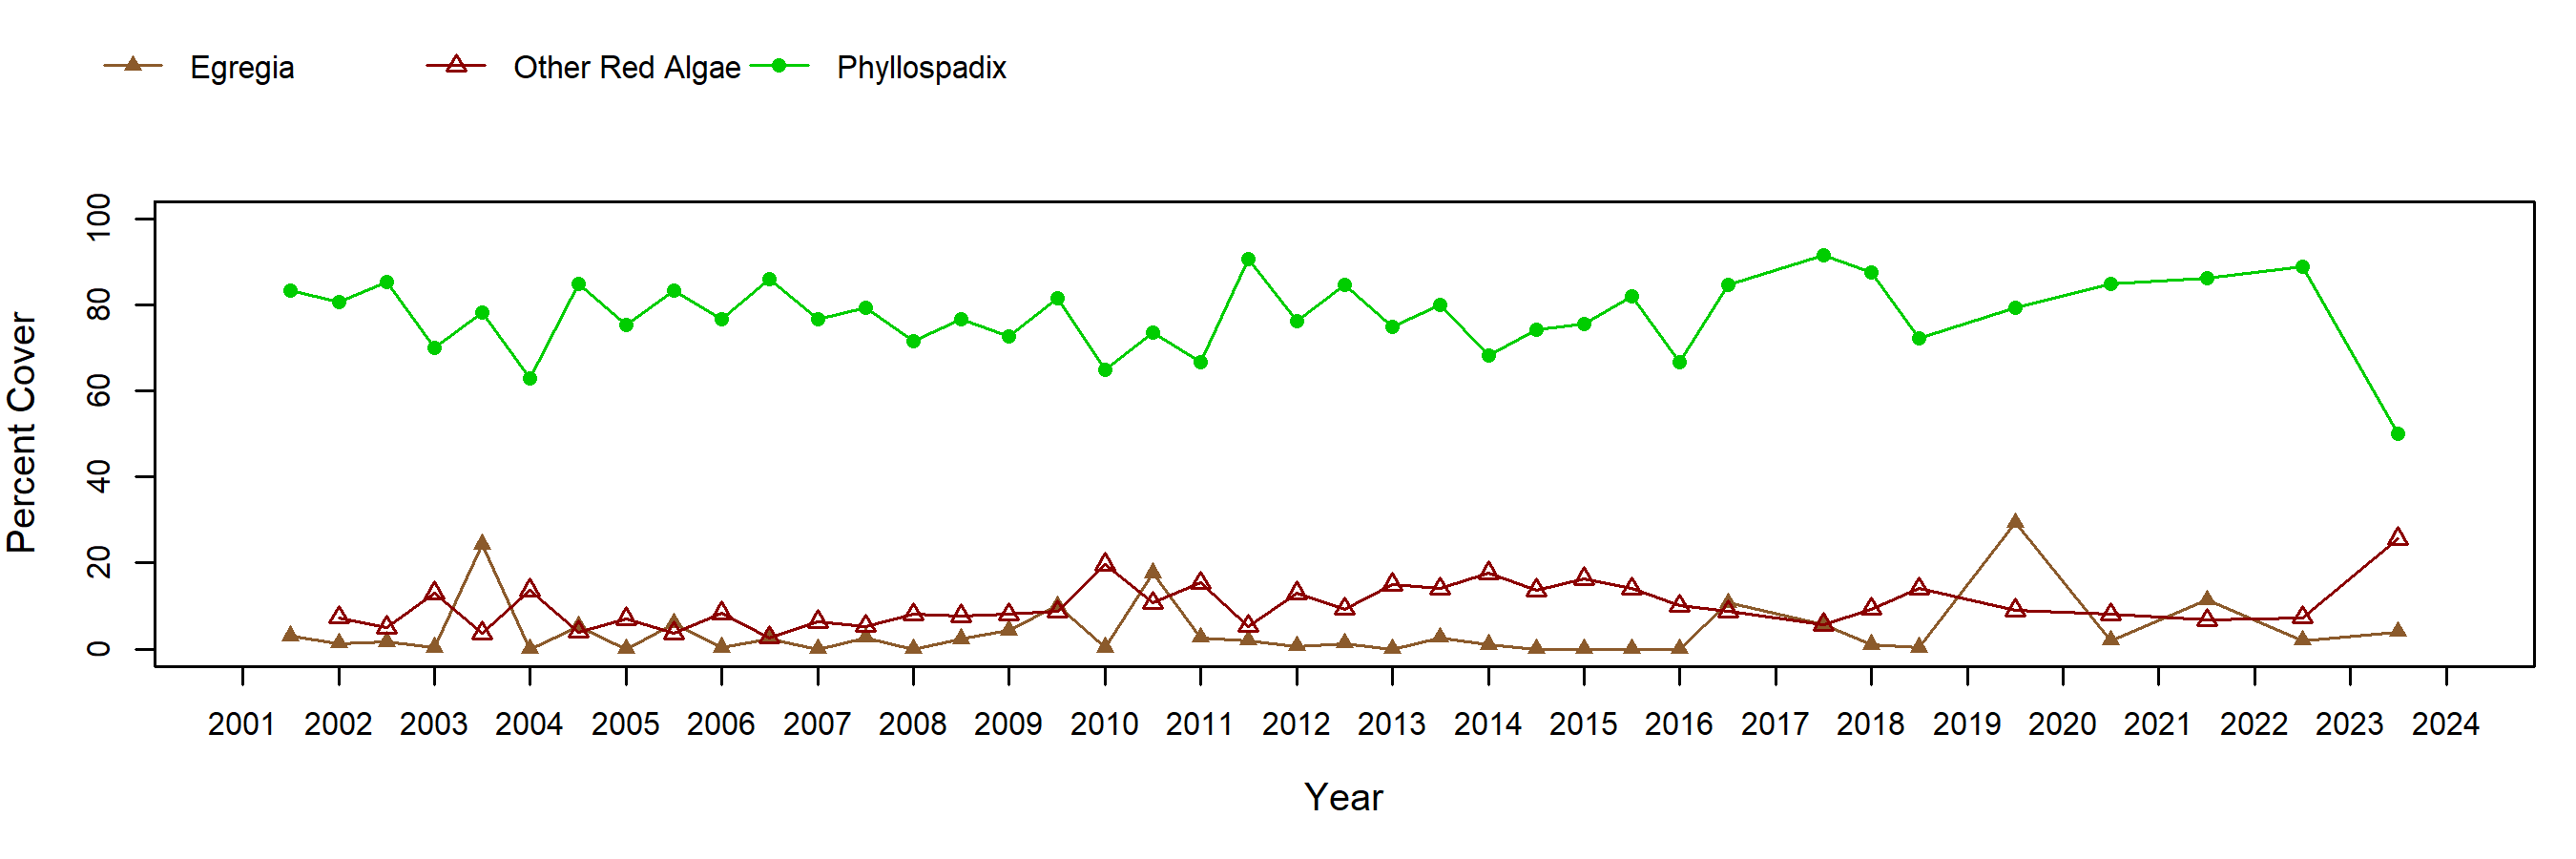 Alegria surfgrass trend plot